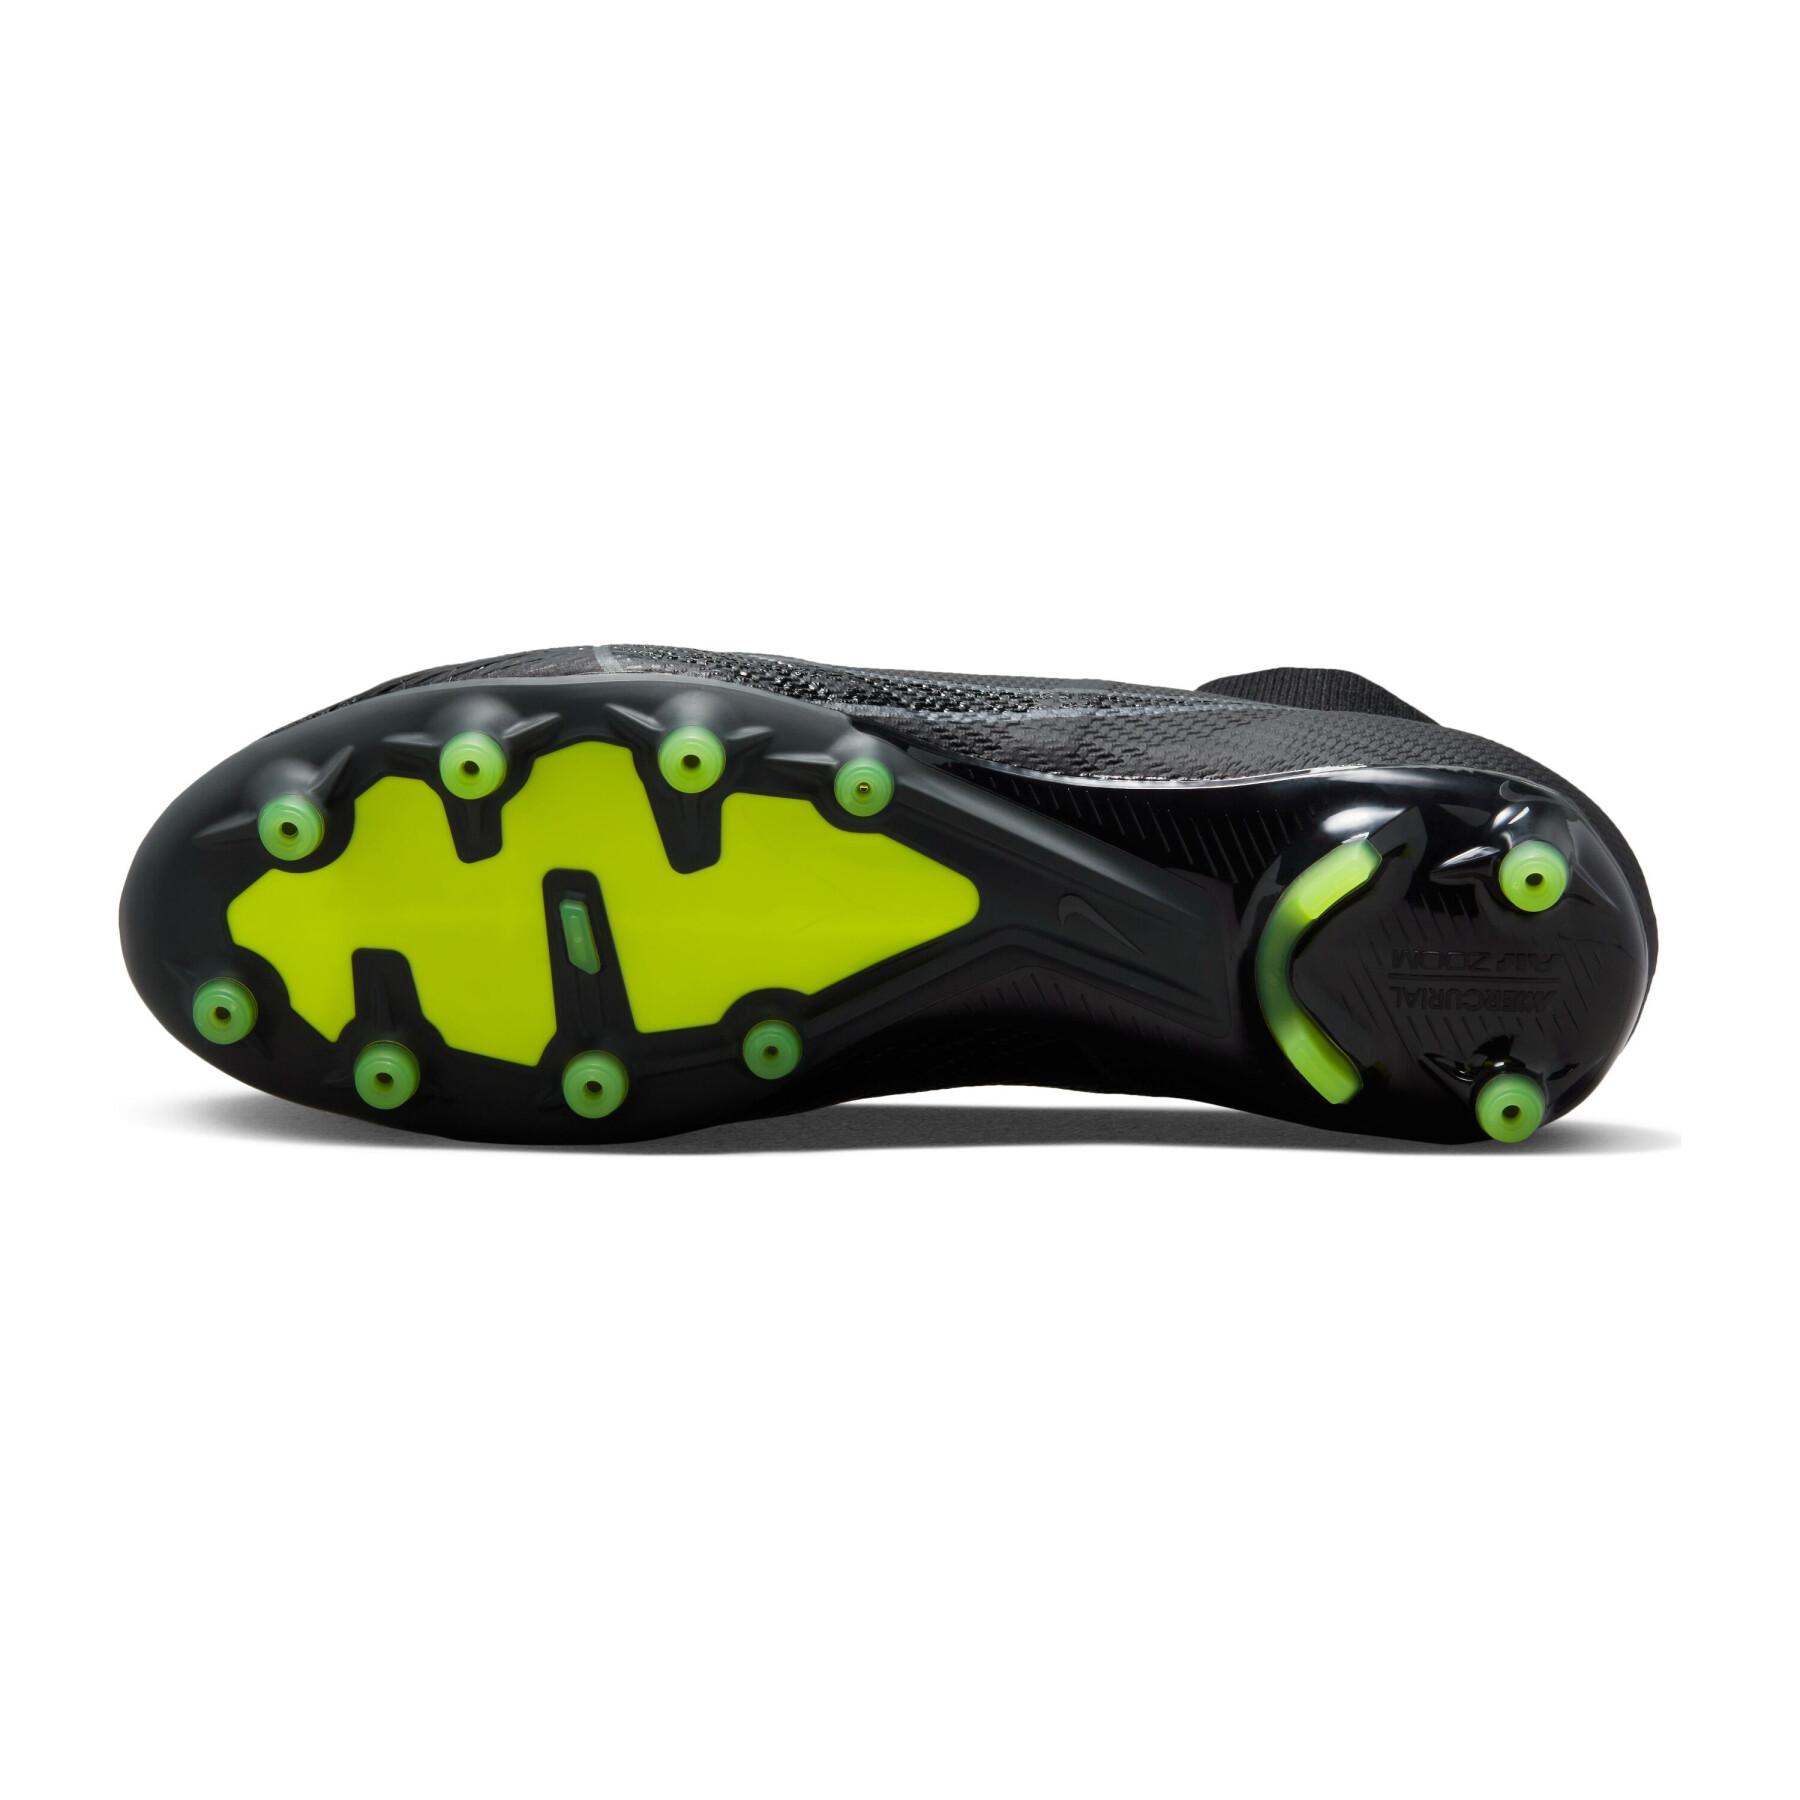 Botas de fútbol Nike Zoom Mercurial Superfly 9 Pro AG-Pro - Shadow Black Pack